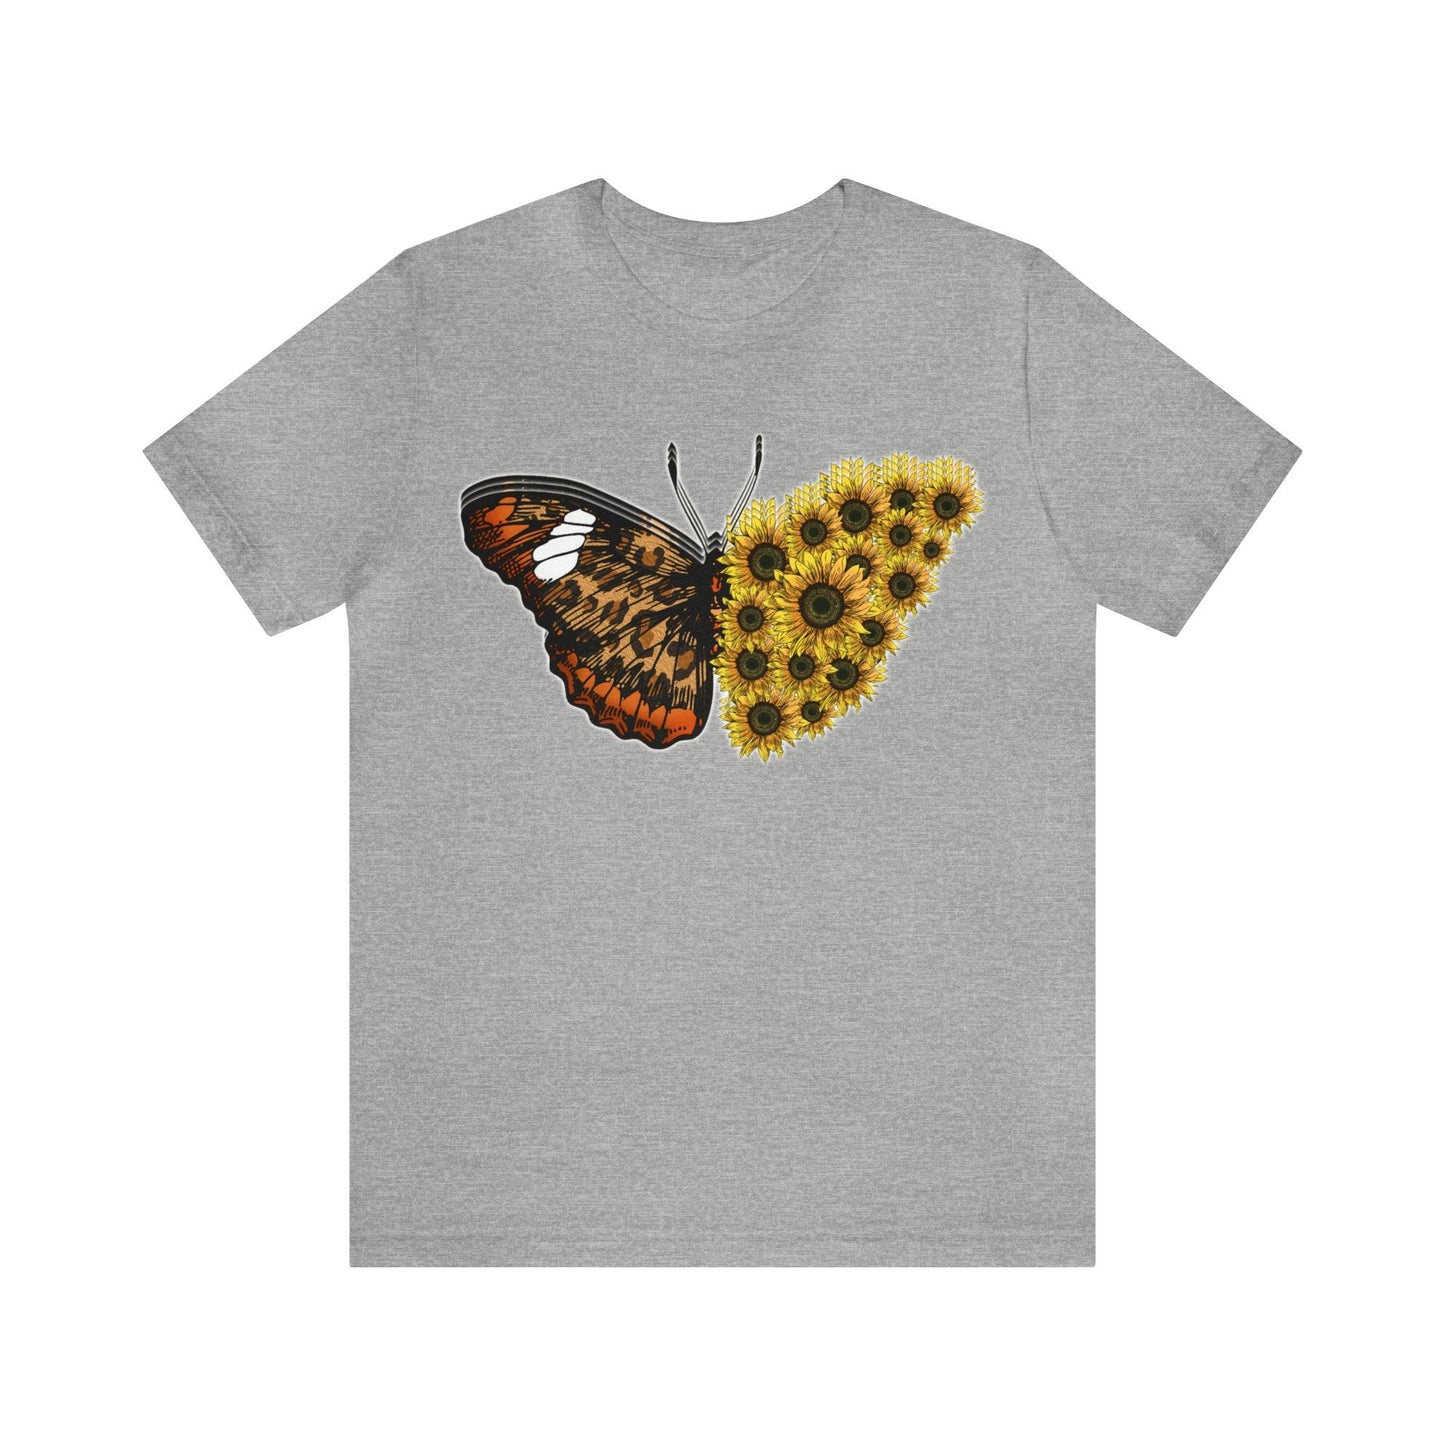 Butterfly Shirt, Sunflower Shirt, Insect Shirt Nature love T shirtFloral Tee Shirt, Flower Shirt, Garden Shirt, Womens Fall Summer shirt